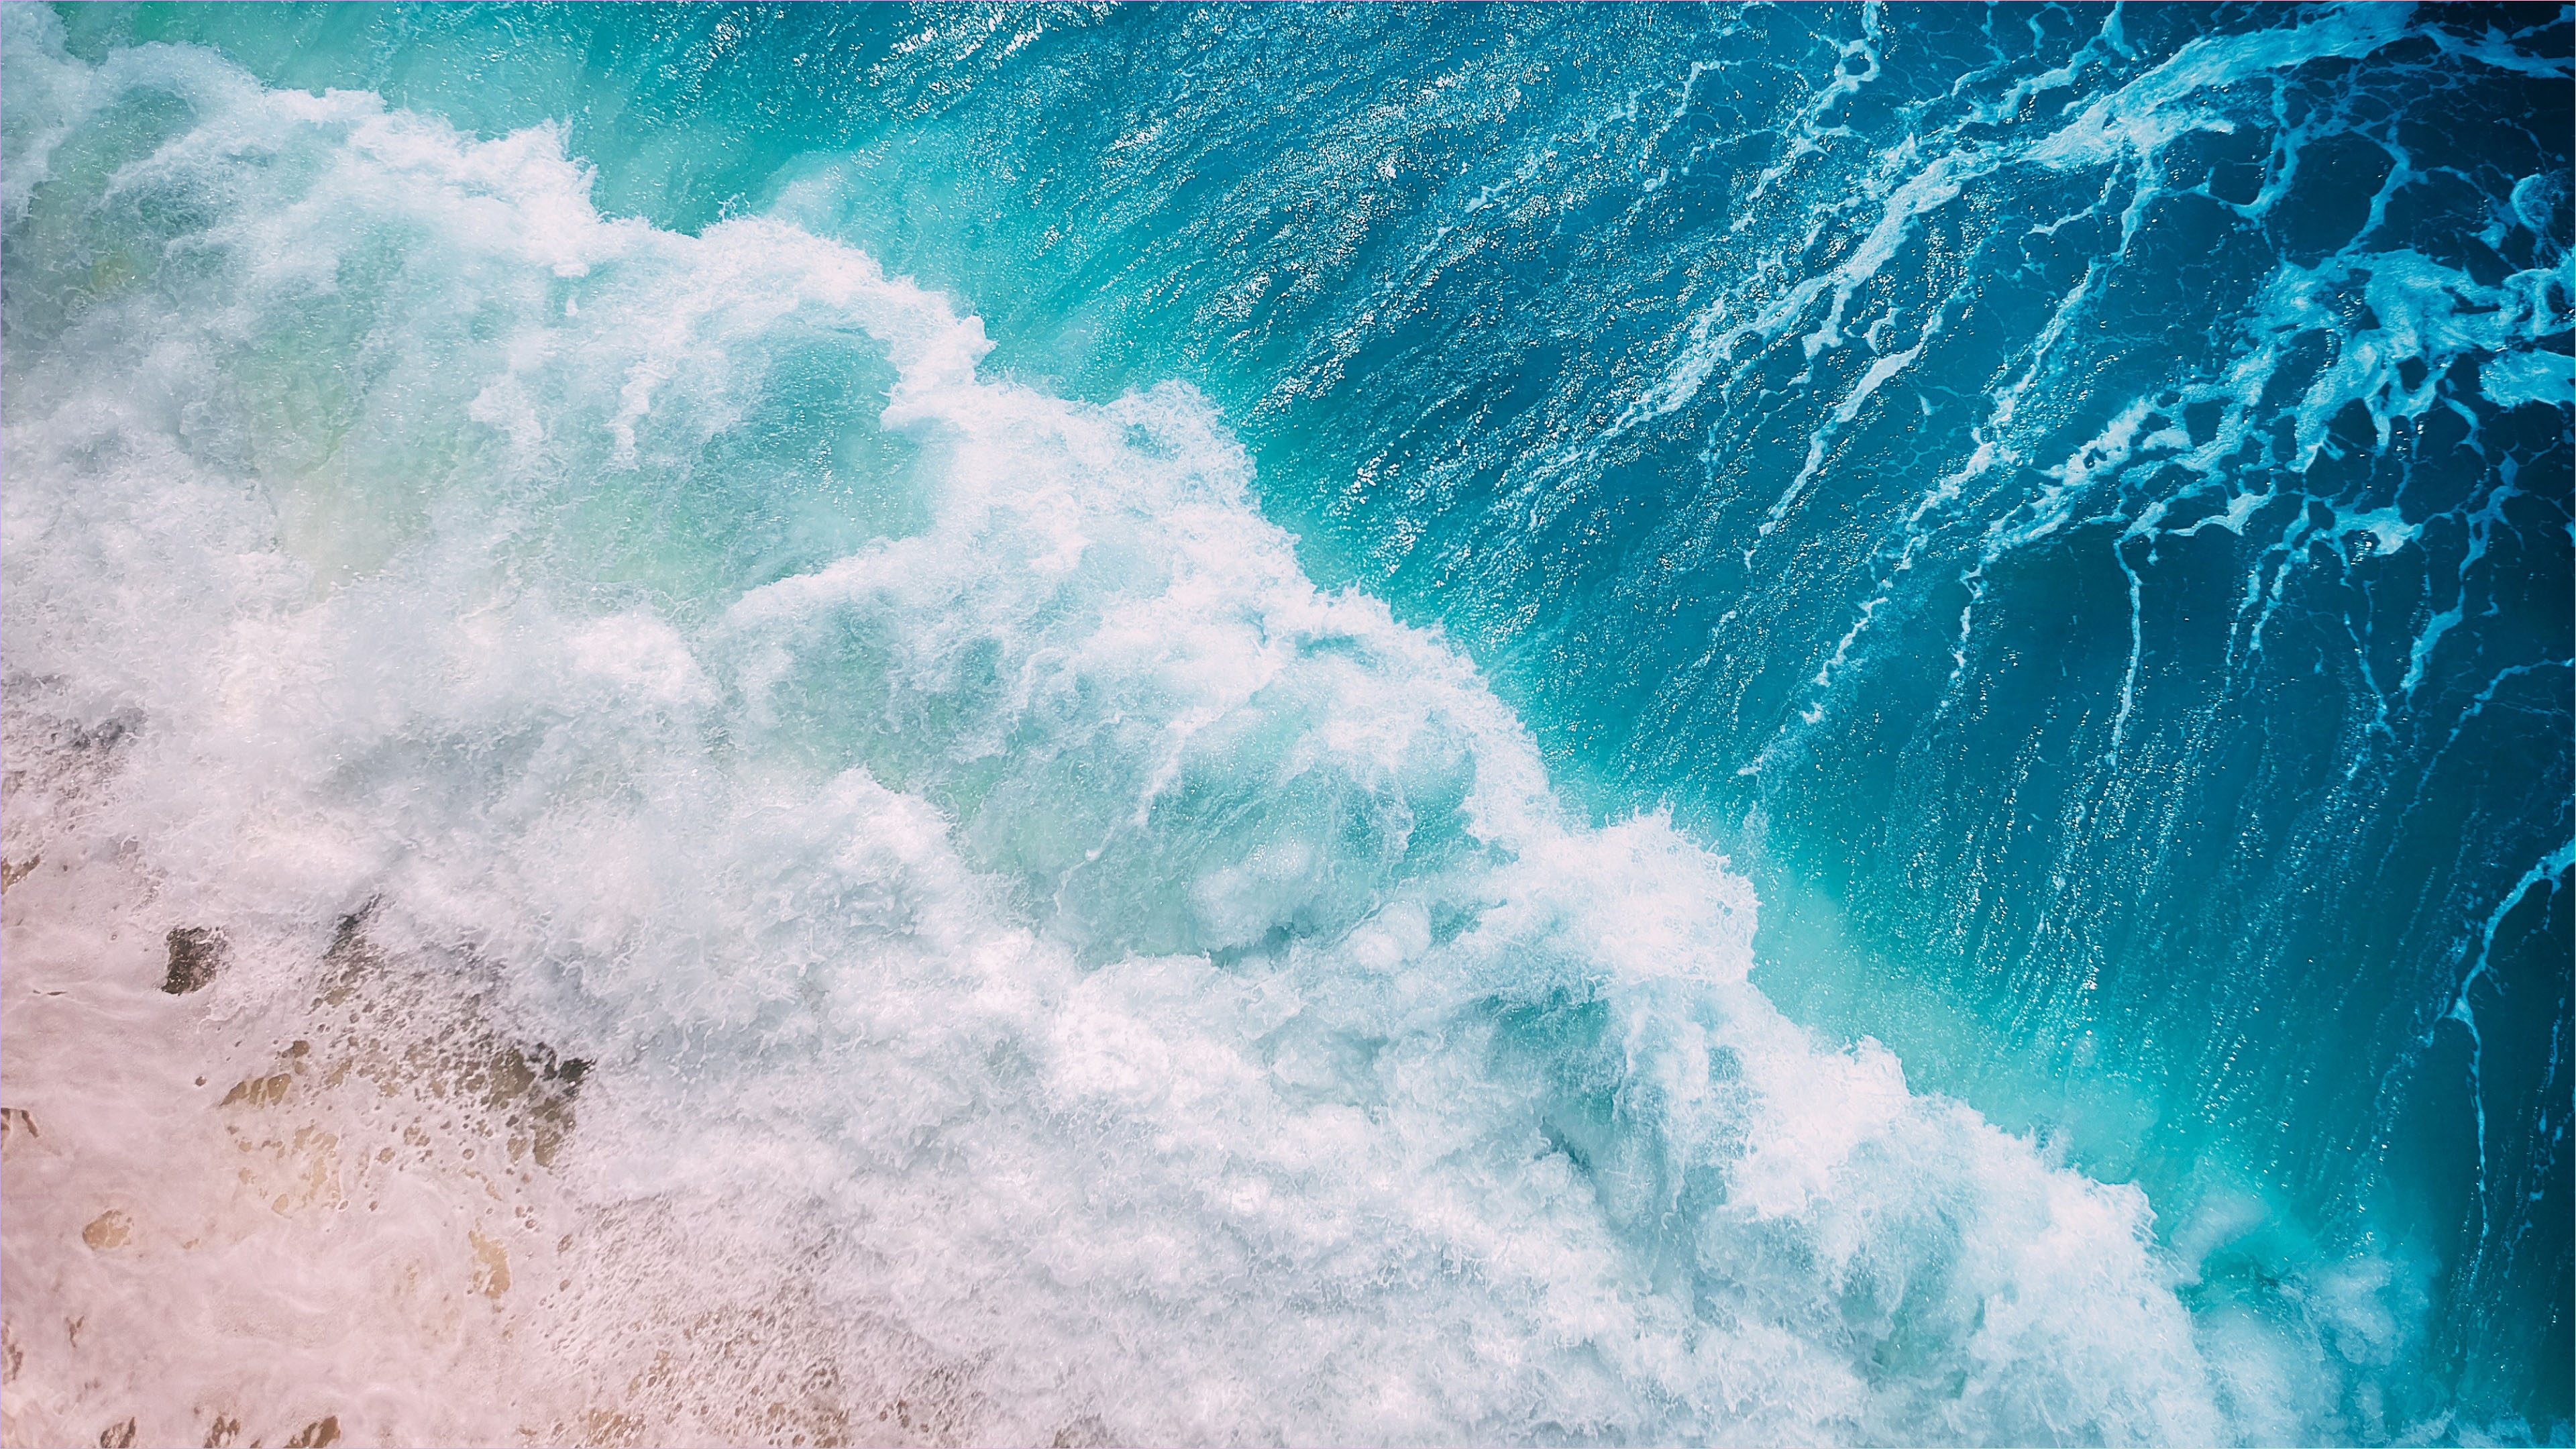 Hình Nền 4K: Những hình nền 4K đẹp nhất của bãi biển sẽ đưa bạn vào một thế giới tuyệt đẹp và sống động nhất. Với độ phân giải cao và màu sắc cực kỳ chân thật, các hình nền sẽ mang lại cho bạn cảm giác như đang đứng trực tiếp tại bờ biển, nghe tiếng sóng và hít thở hương biển.